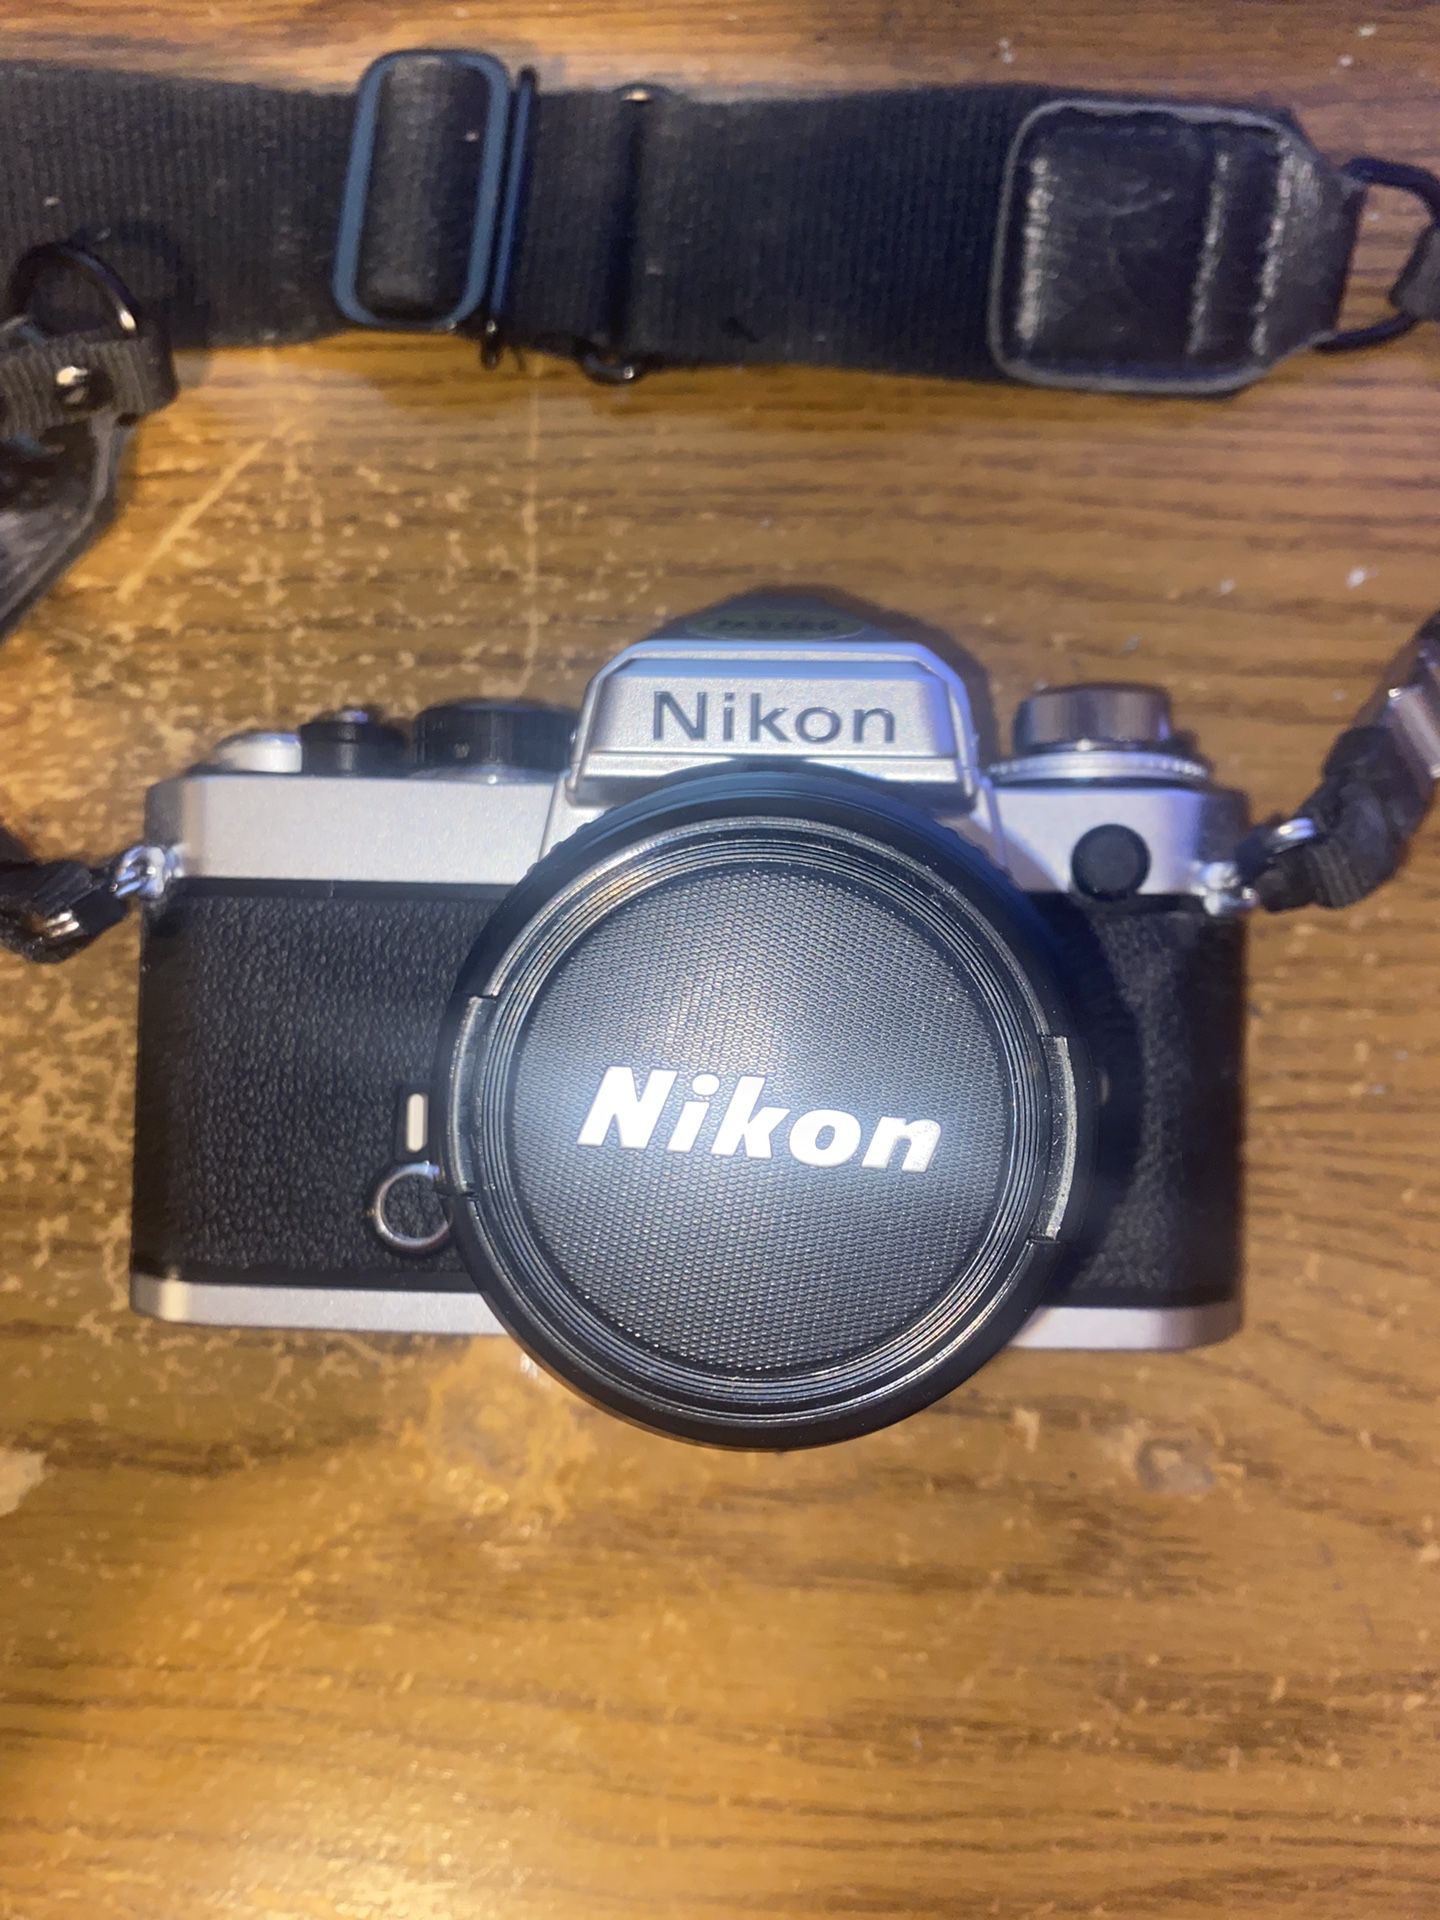 Nikon FE 35mm Film Camera Sliver & Black, Lenses, Flash, And Case. Made In Japan